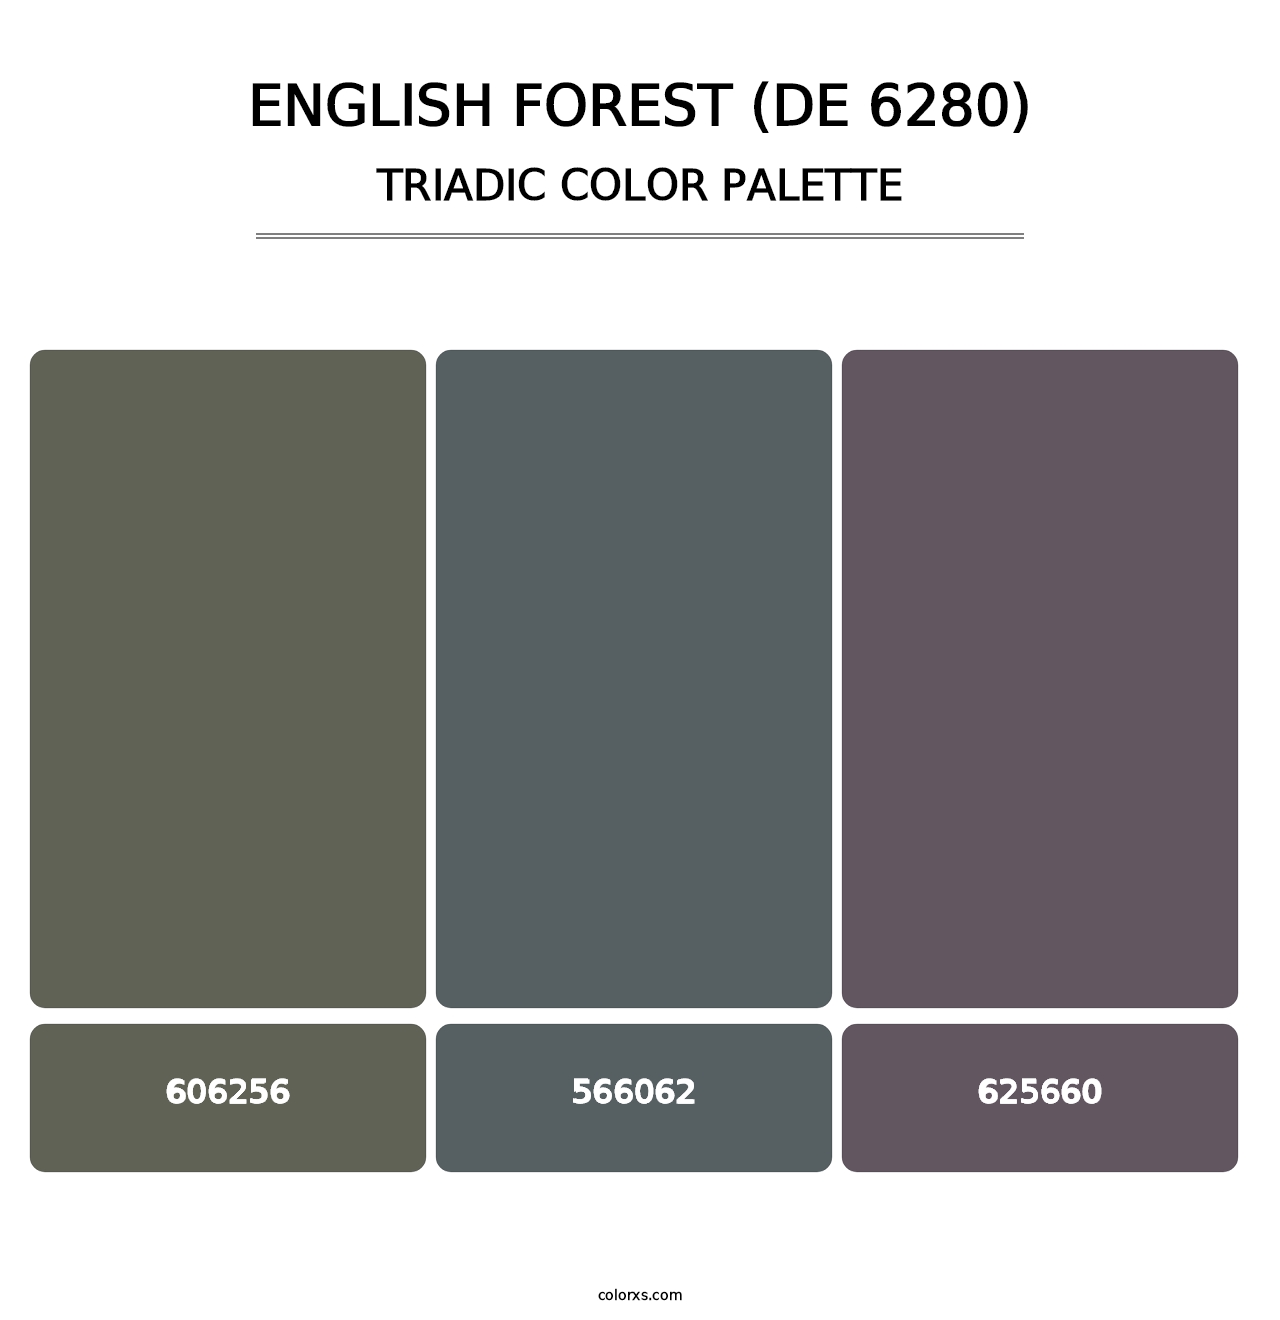 English Forest (DE 6280) - Triadic Color Palette